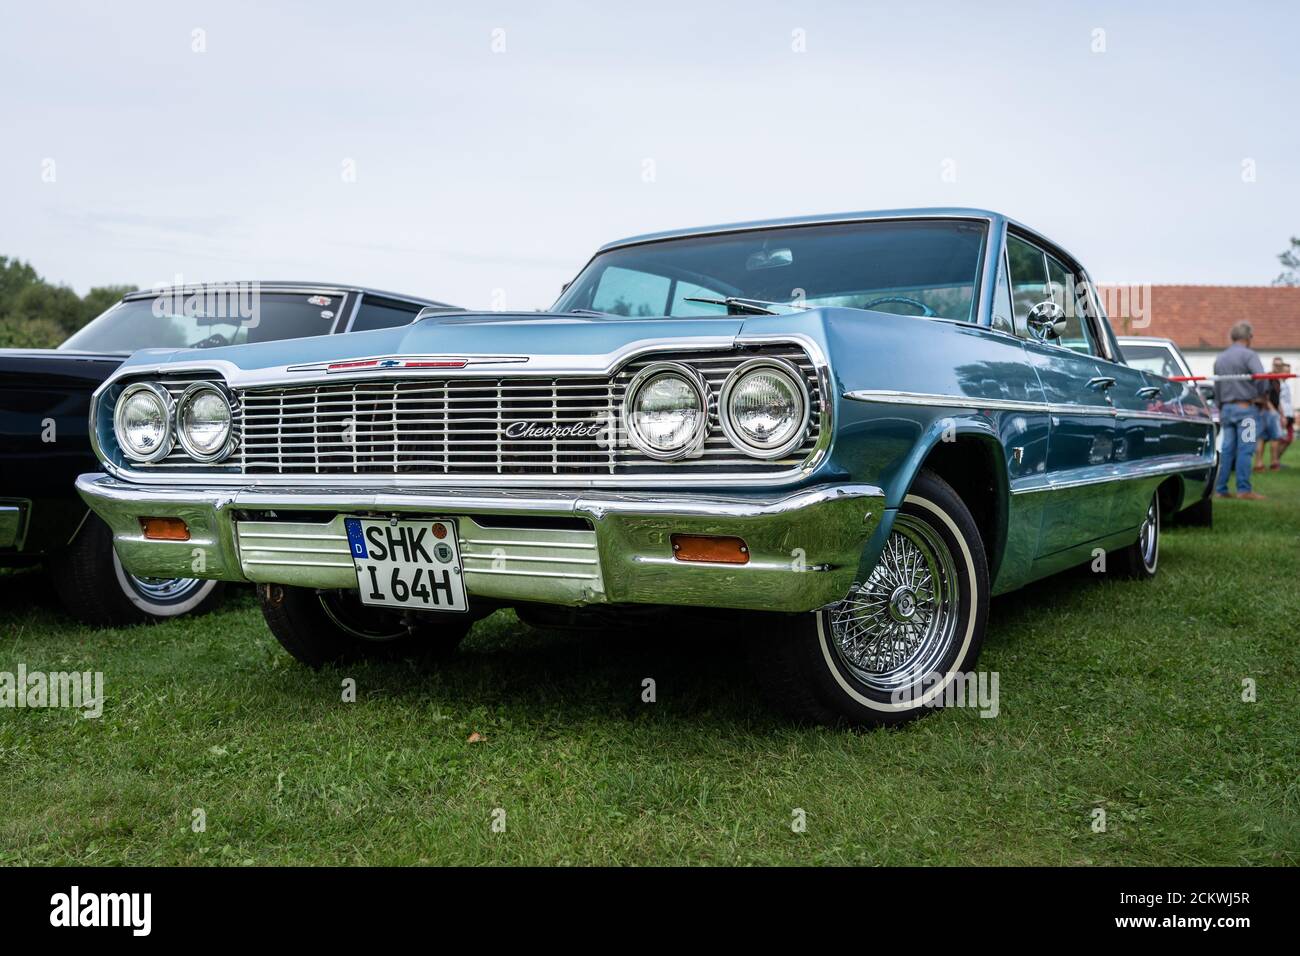 DIEDERSDORF, ALLEMAGNE - 30 AOÛT 2020 : la voiture pleine grandeur Impala de Chevrolet, 1964. L'exposition « US car Classics ». Banque D'Images